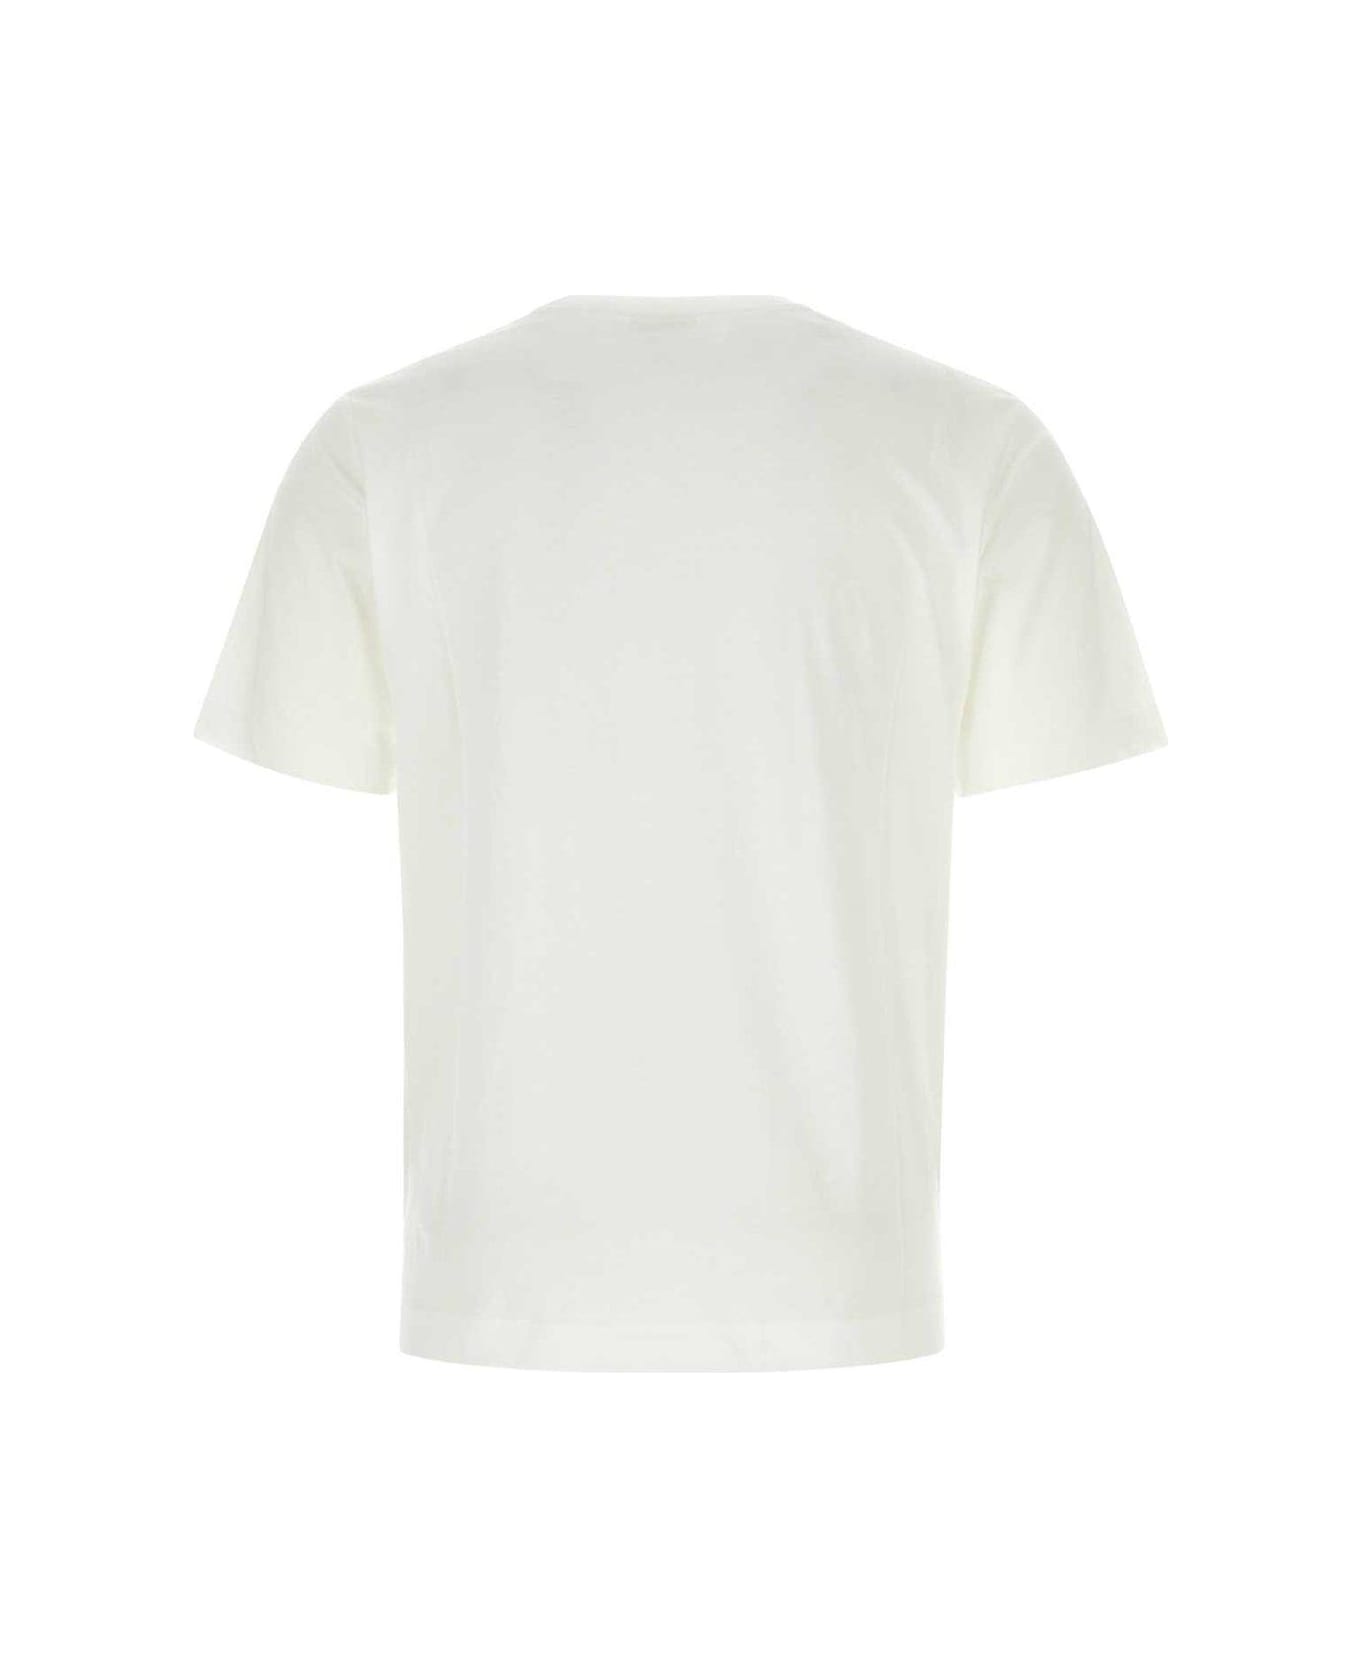 Dries Van Noten Short Sleeved Crewneck T-shirt - Bianco シャツ